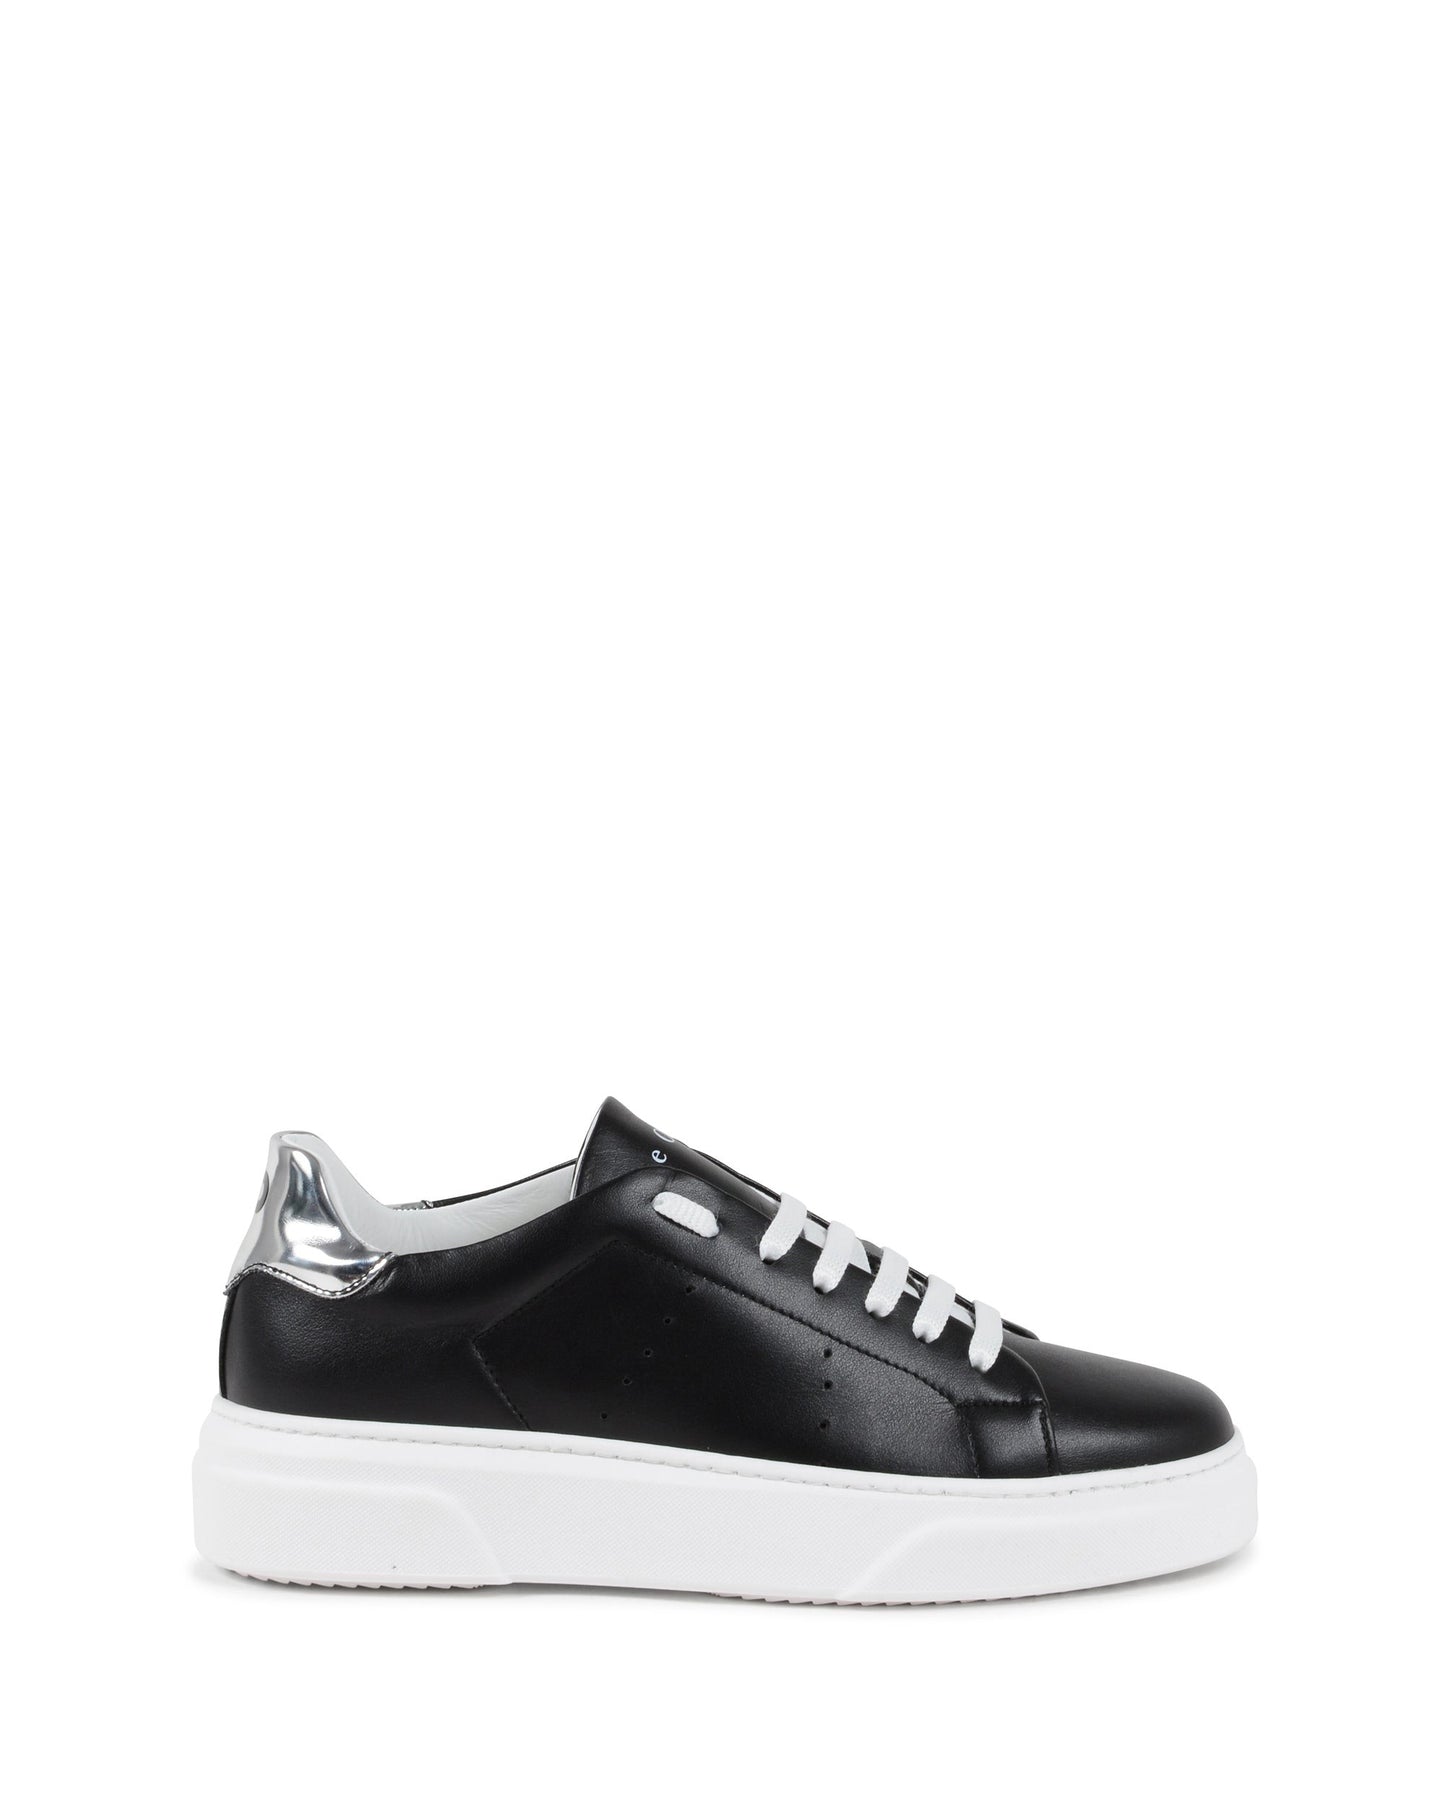 Runaround Sneaker - Black/Silver